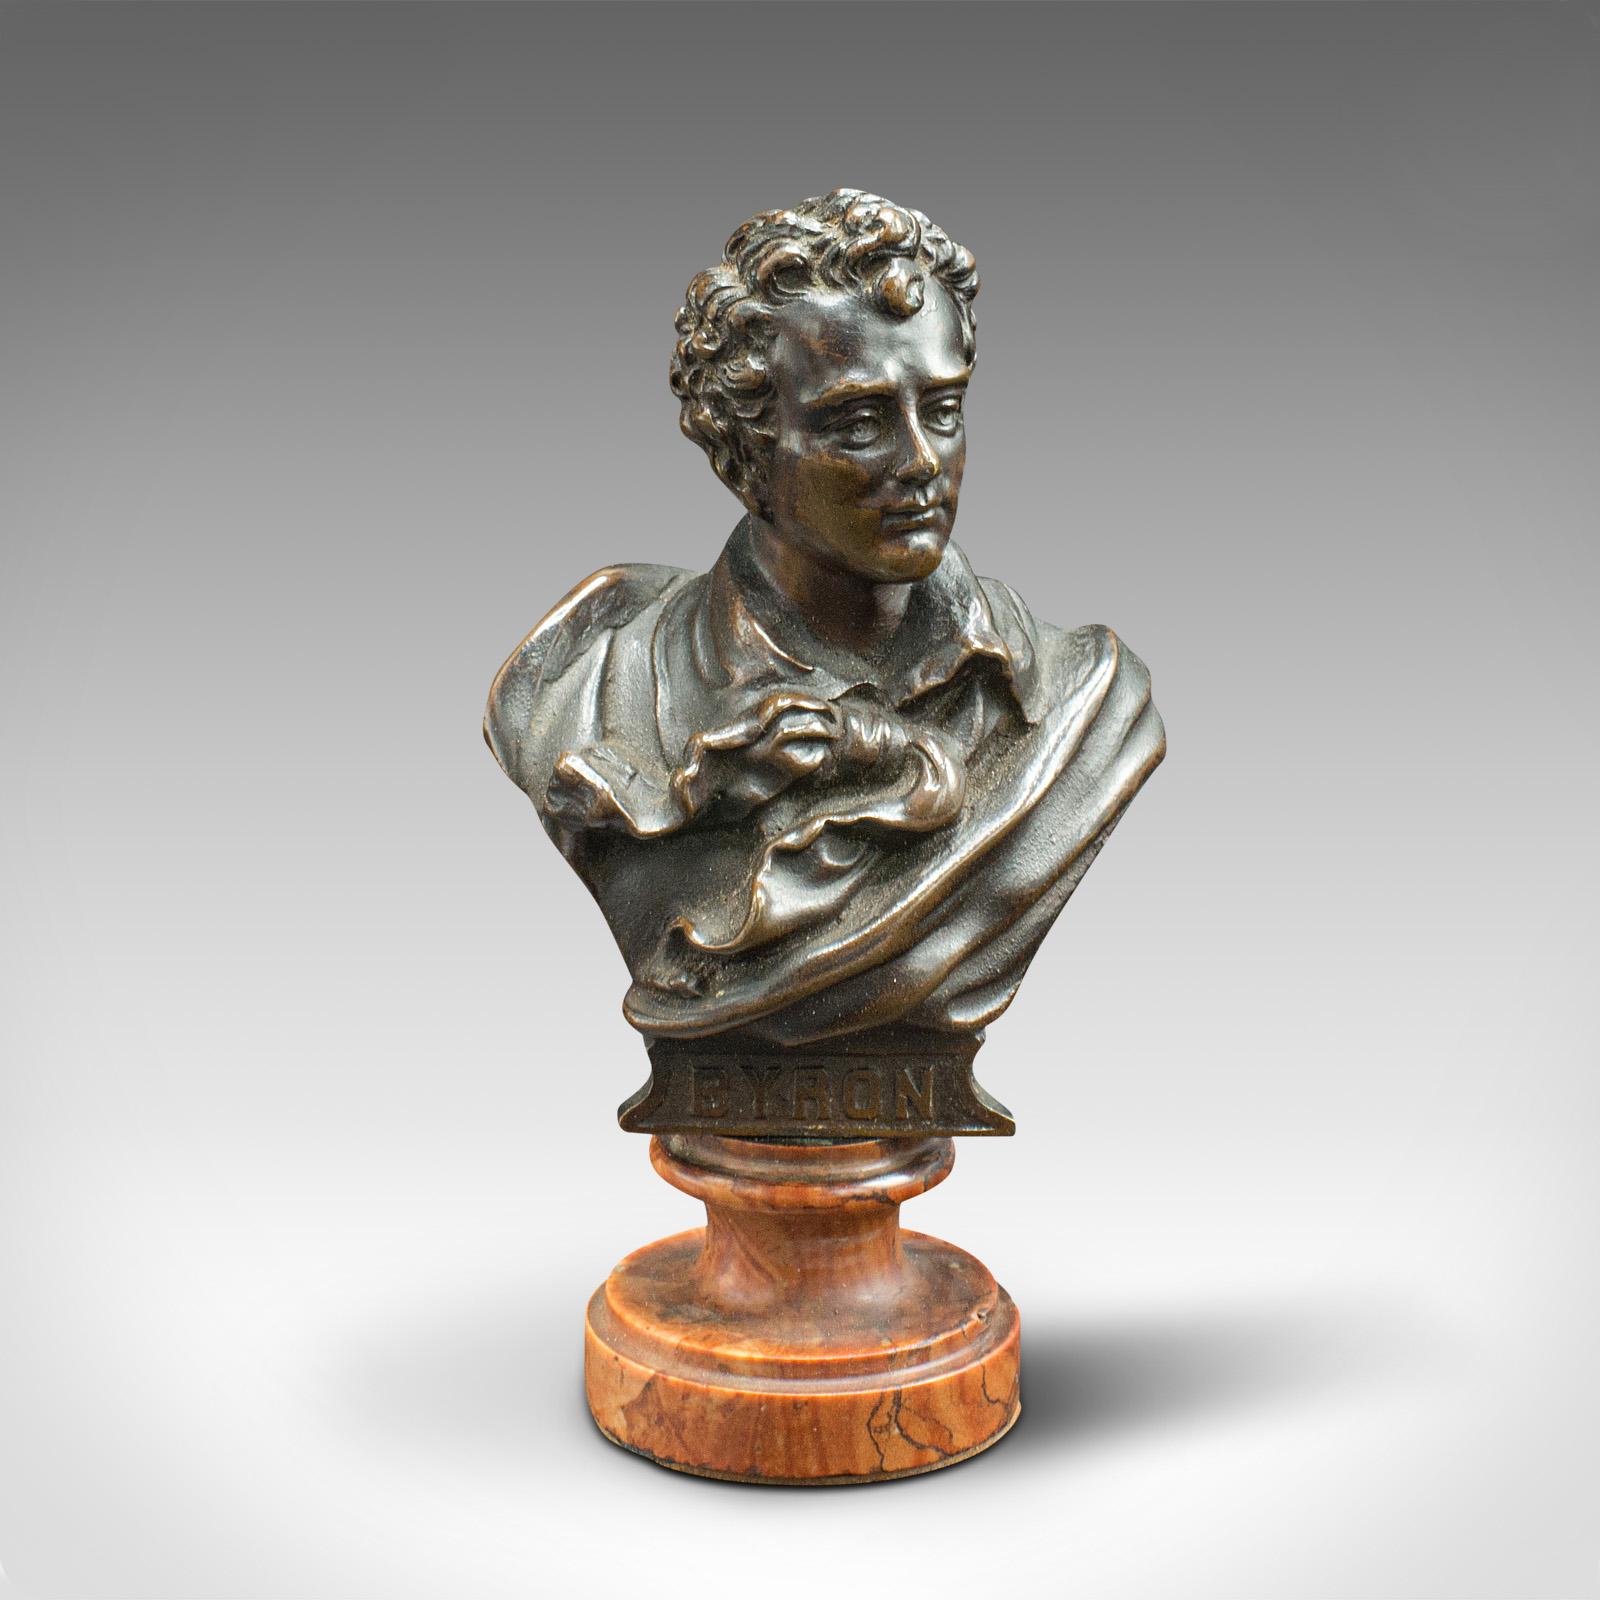 Dies ist eine kleine antike Porträtbüste. Eine österreichische Bronzefigur von Lord Byron (1788 - 1824) auf Marmor, aus der spätviktorianischen Zeit, um 1900.

Von zierlicher Form, mit charaktervollem Detail und leichter Verwitterung
Zeigt eine